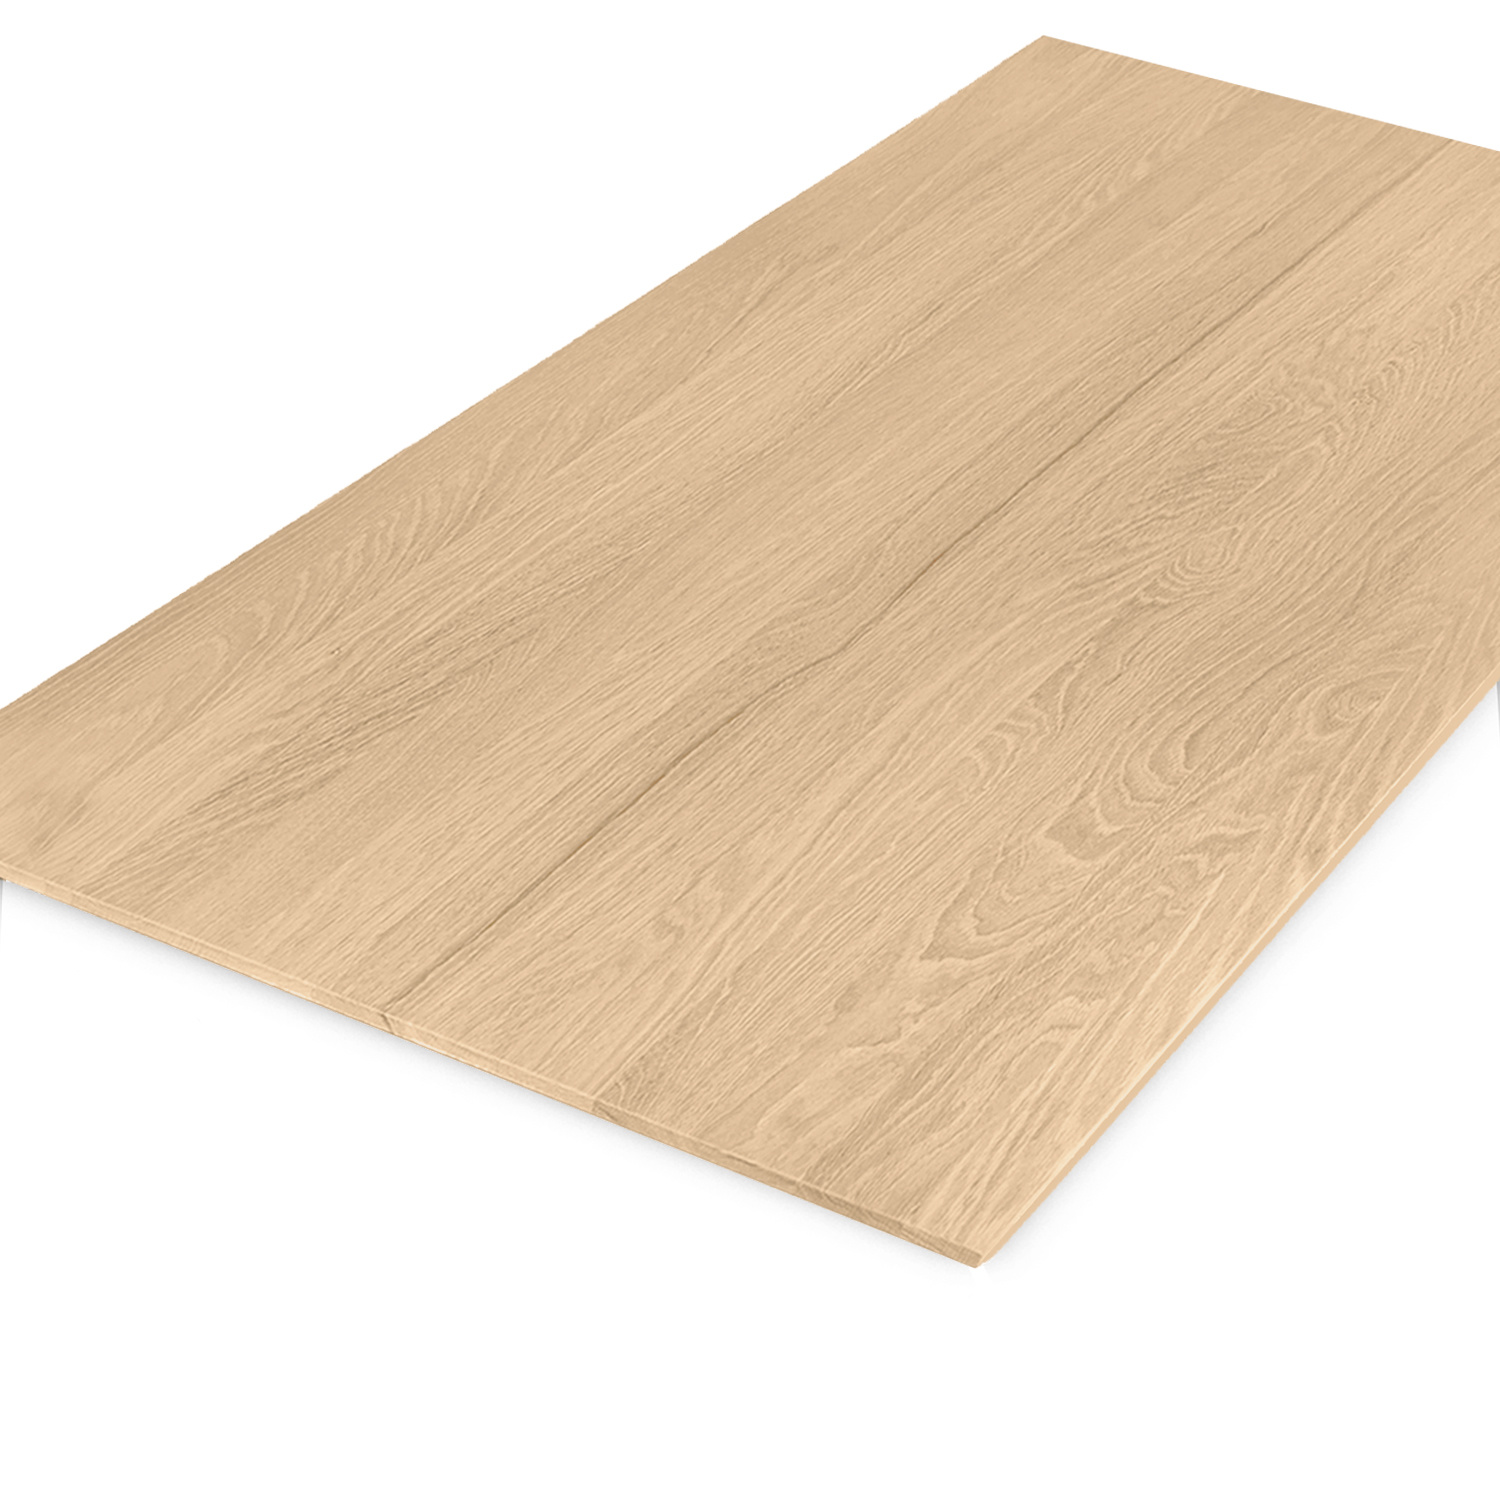  Tischplatte Eiche - Schweizer Kante - nach Maß - 4 cm dick (2-lagig) - Eichenholz A-Qualität - Eiche Tischplatte massiv - verleimt & künstlich getrocknet (HF 8-12%) - 50-120x50-300 cm